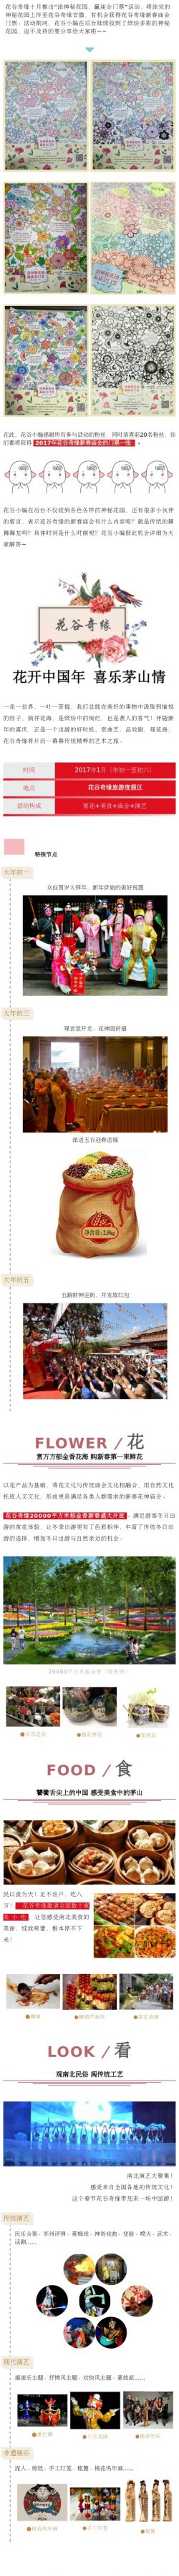 春节传统节日喜庆文章模板